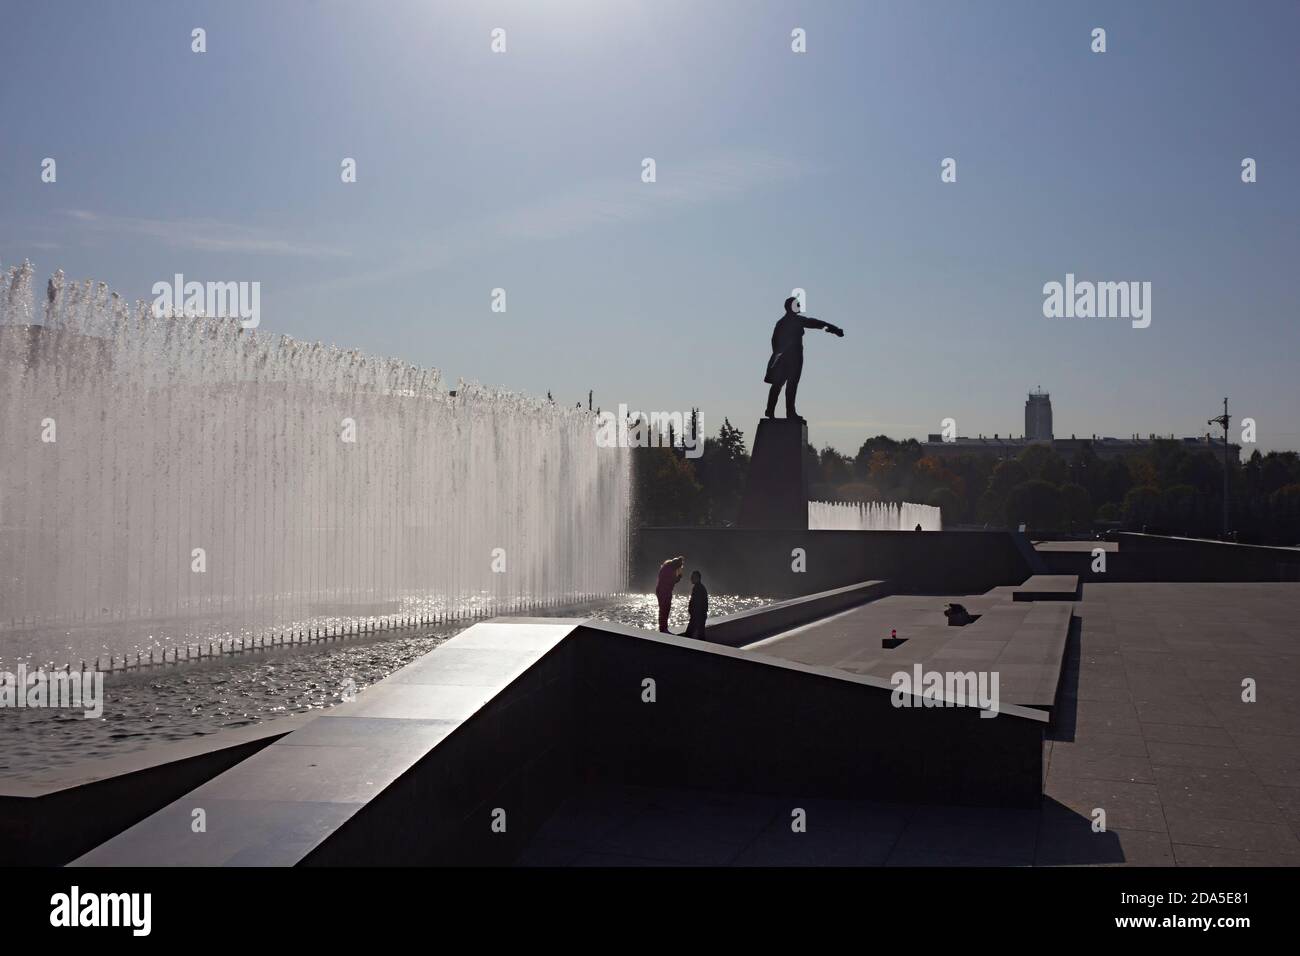 San Pietroburgo, Russia, 02 ottobre 2020. L'insieme architettonico di Piazza Moskovskaya: La Casa dei Soviet (stile impero Stalin), fontane della città Foto Stock